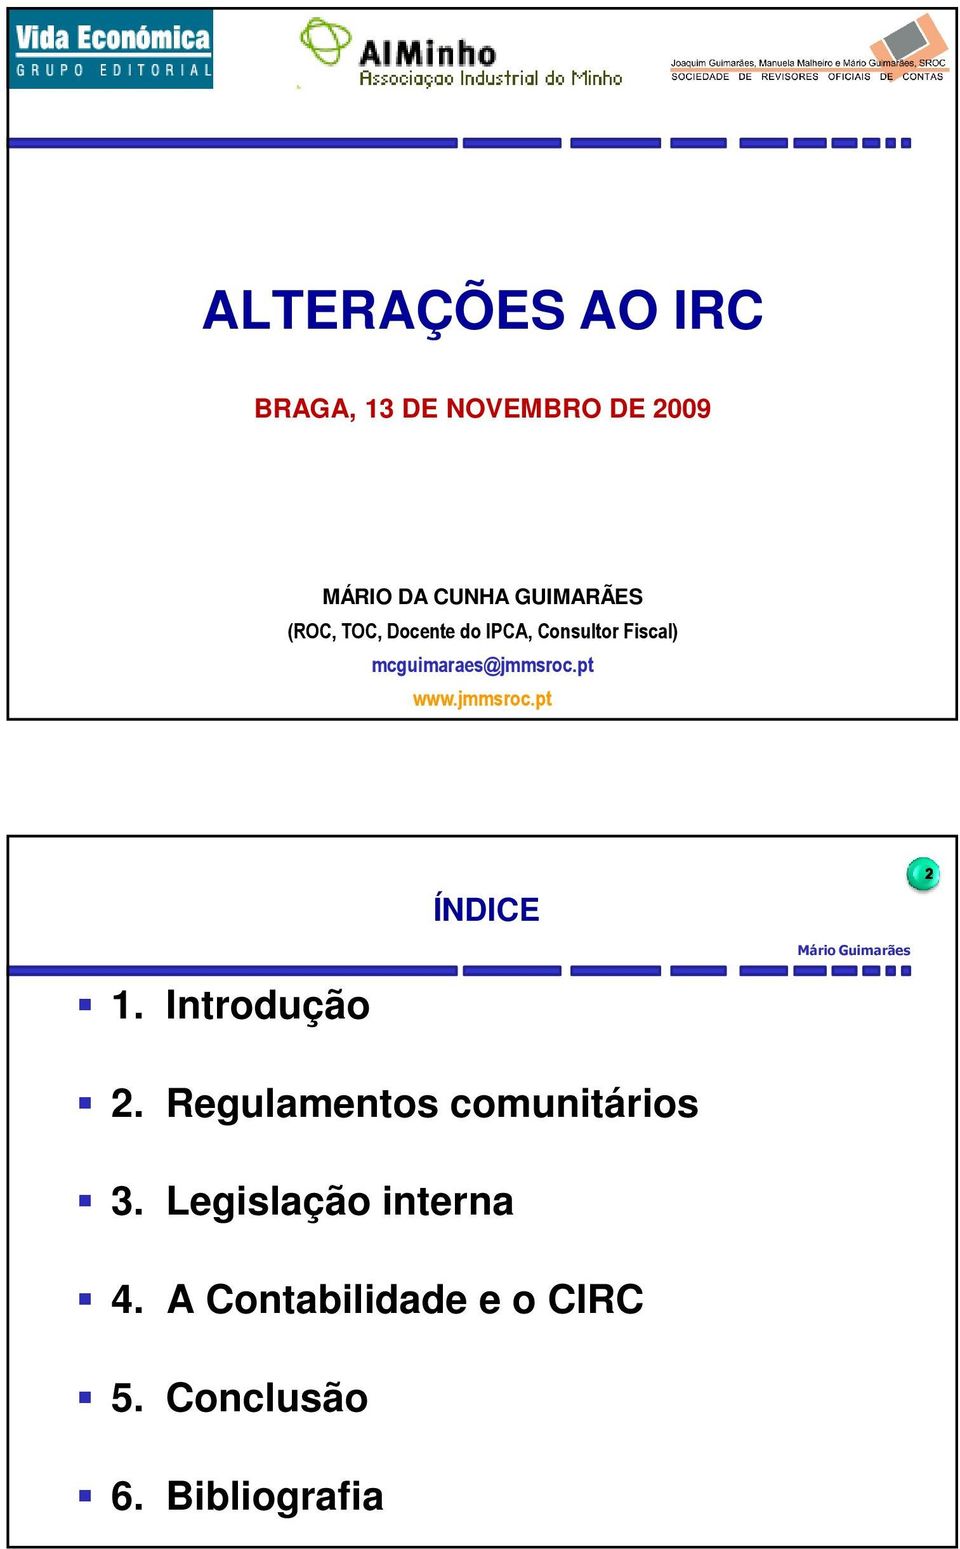 Fiscal) uimaraes@jmmsroc.pt www.jmmsroc.pt ÍNDICE Mário Guimarães2 2.